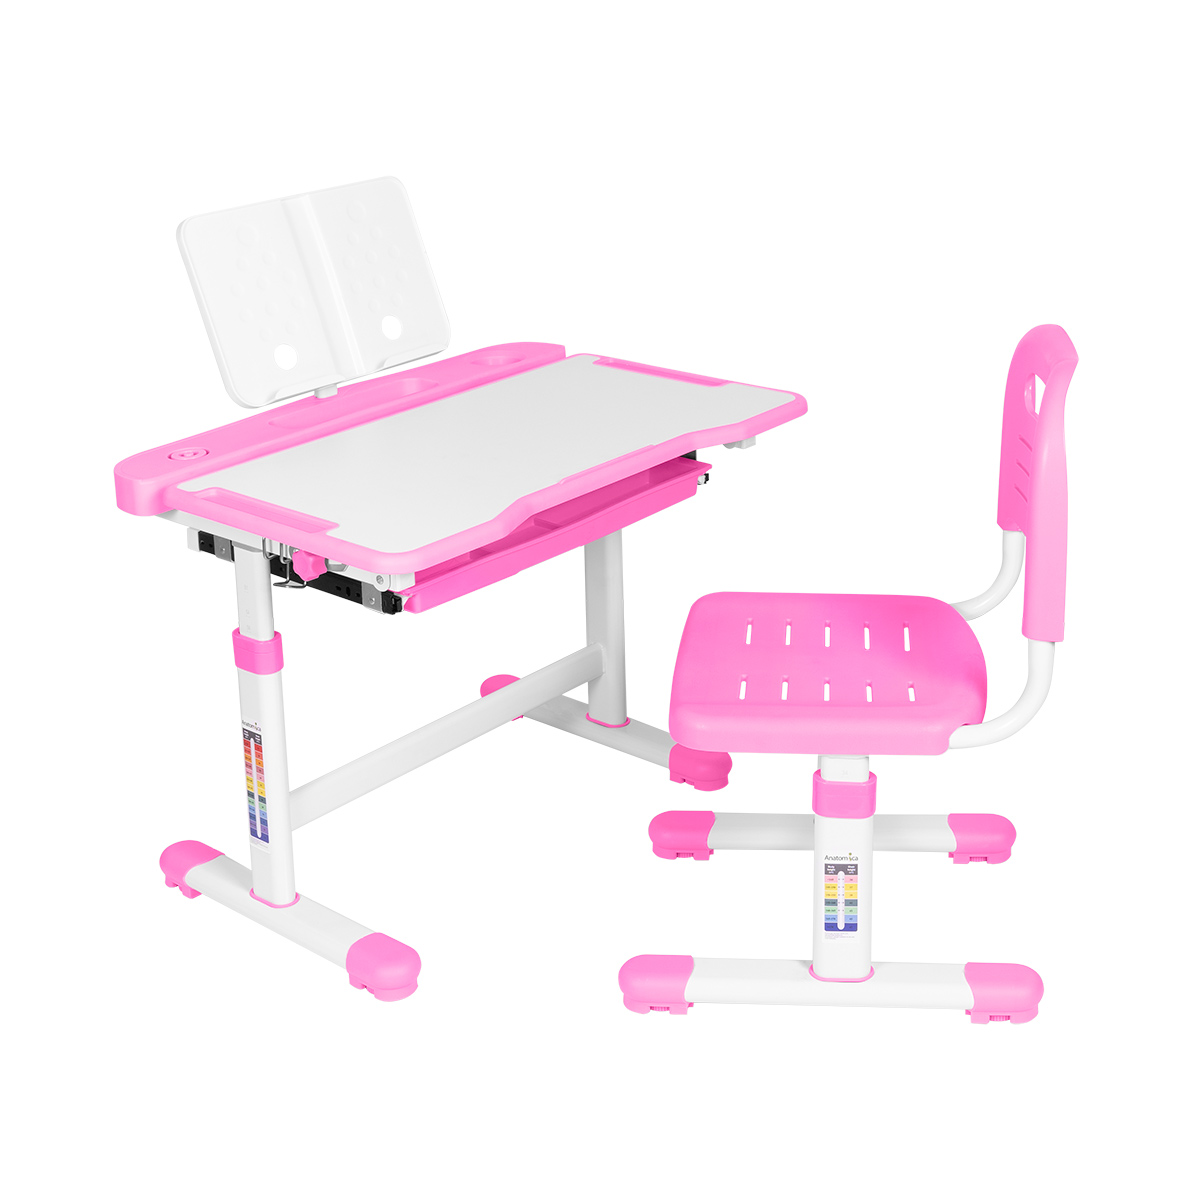 Комплект парта+стул+подставка +органайзер Anatomica Vitera белый/розовый косметичка органайзер на молниях розовый